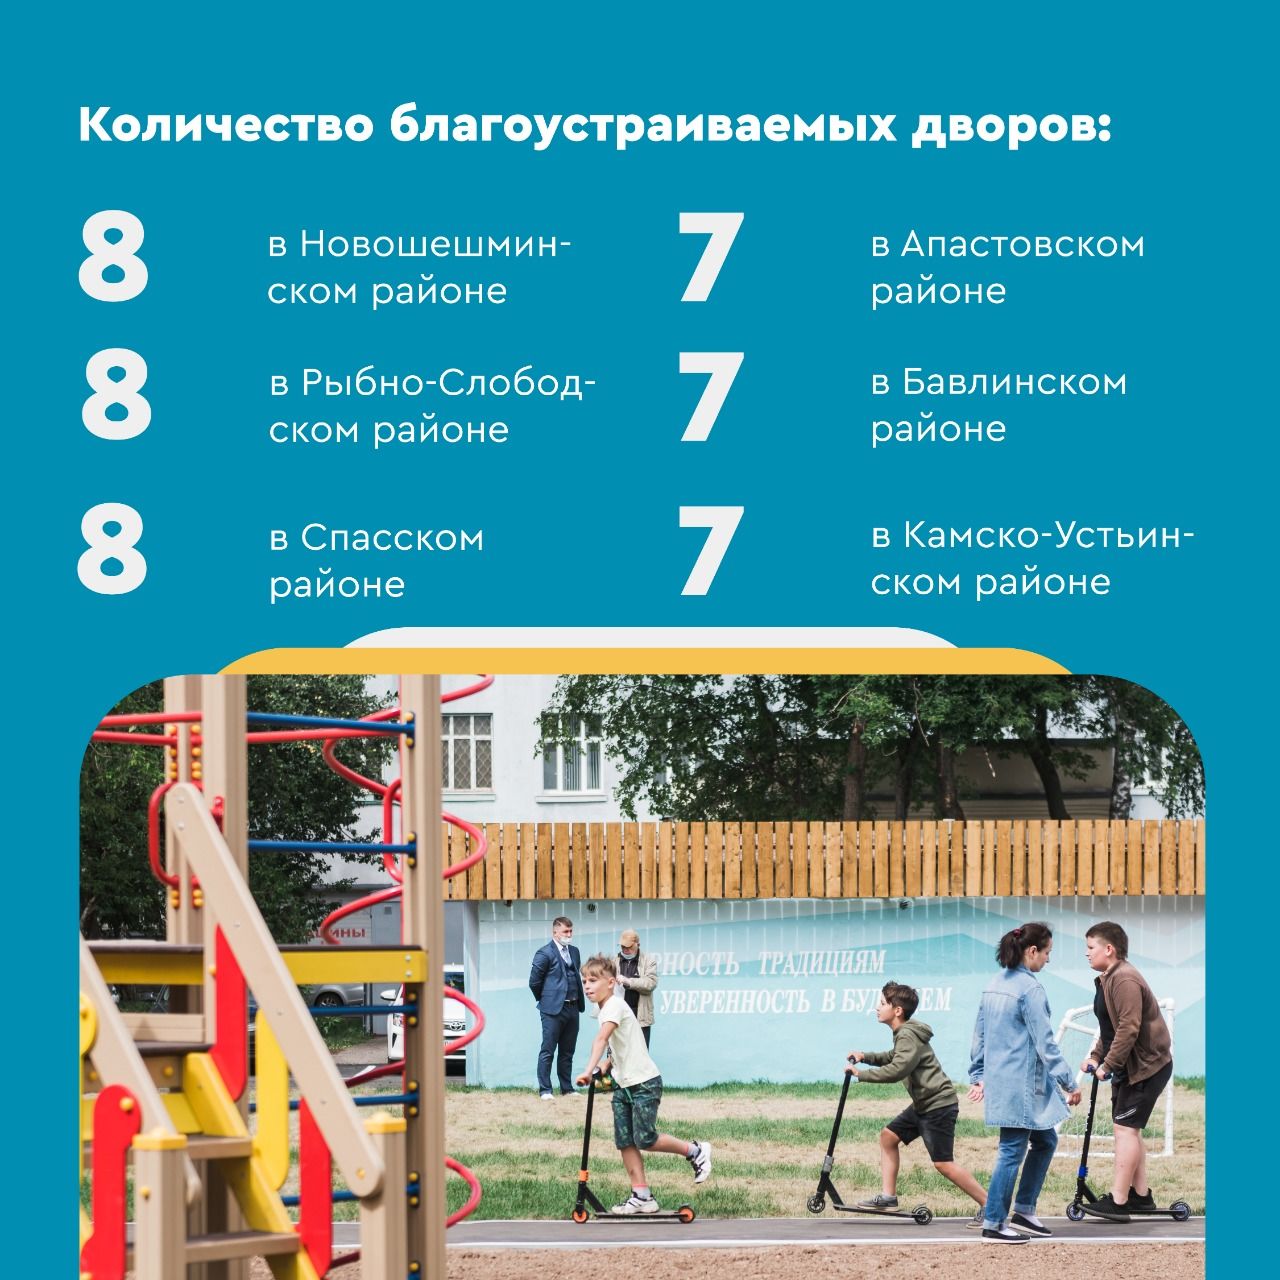 В Спасском районе по программе « Наш двор» благоустроят 8 дворов